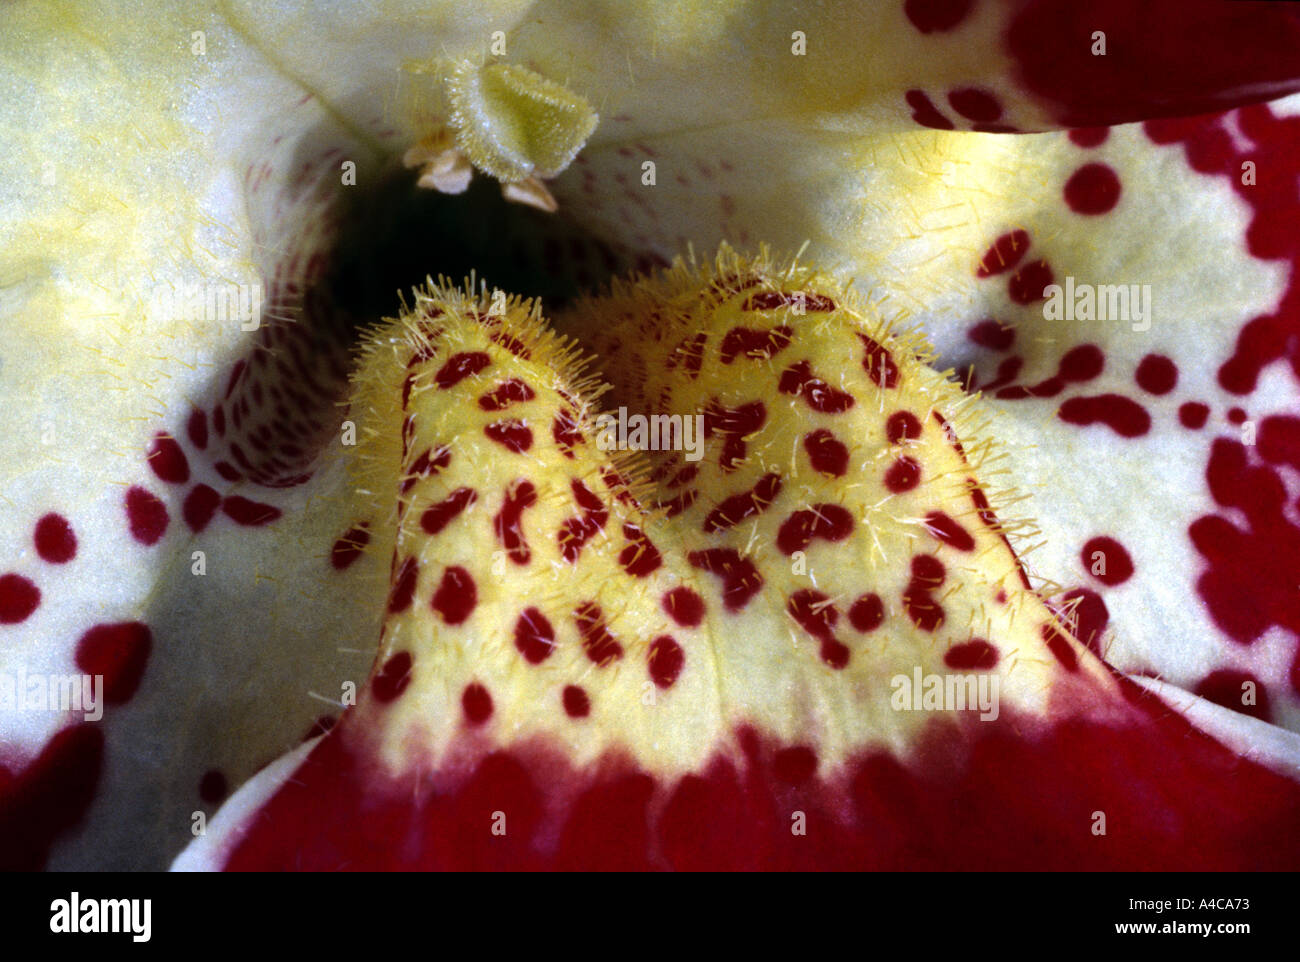 Le rouge et jaune 'close up' de l'intérieur d'une fleur Mimulus Banque D'Images